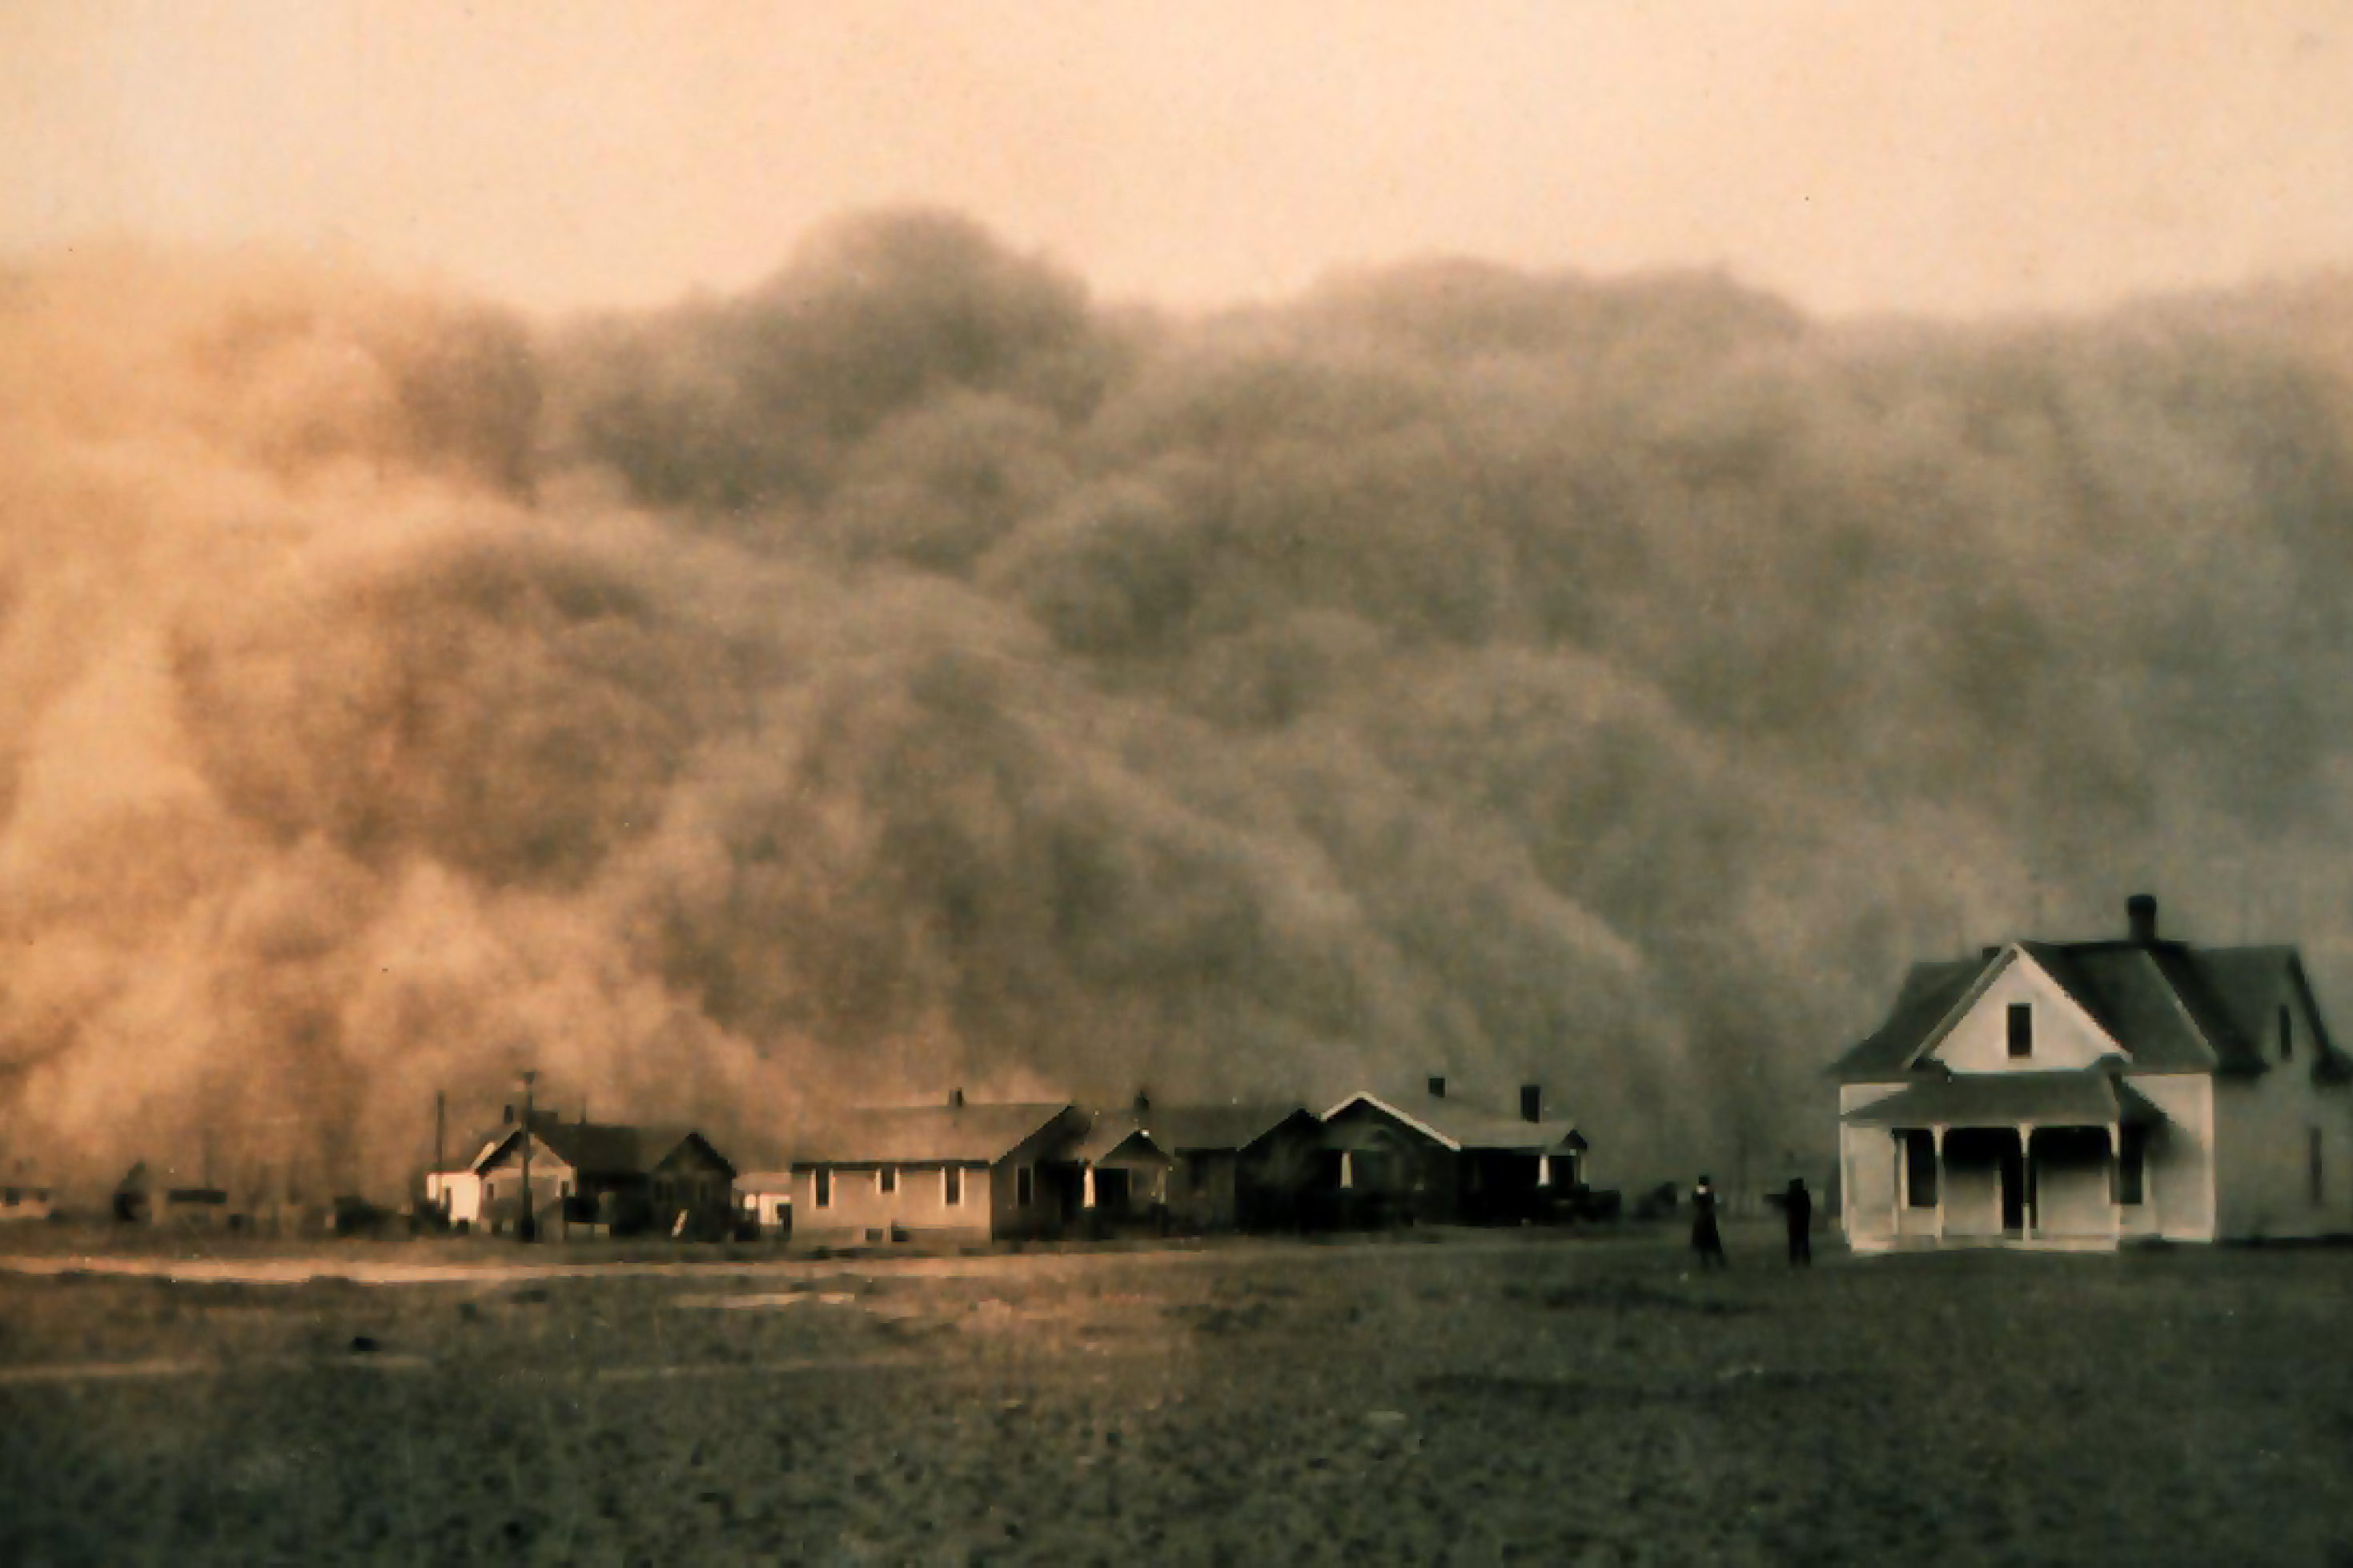 Auf einer historischen Aufnahme aus dem Jahr 1935 sind Häuser der texanischen Stadt Stratford zu sehen, die im Hintergrund von einer herannahenden Staubwolke überragt werden.